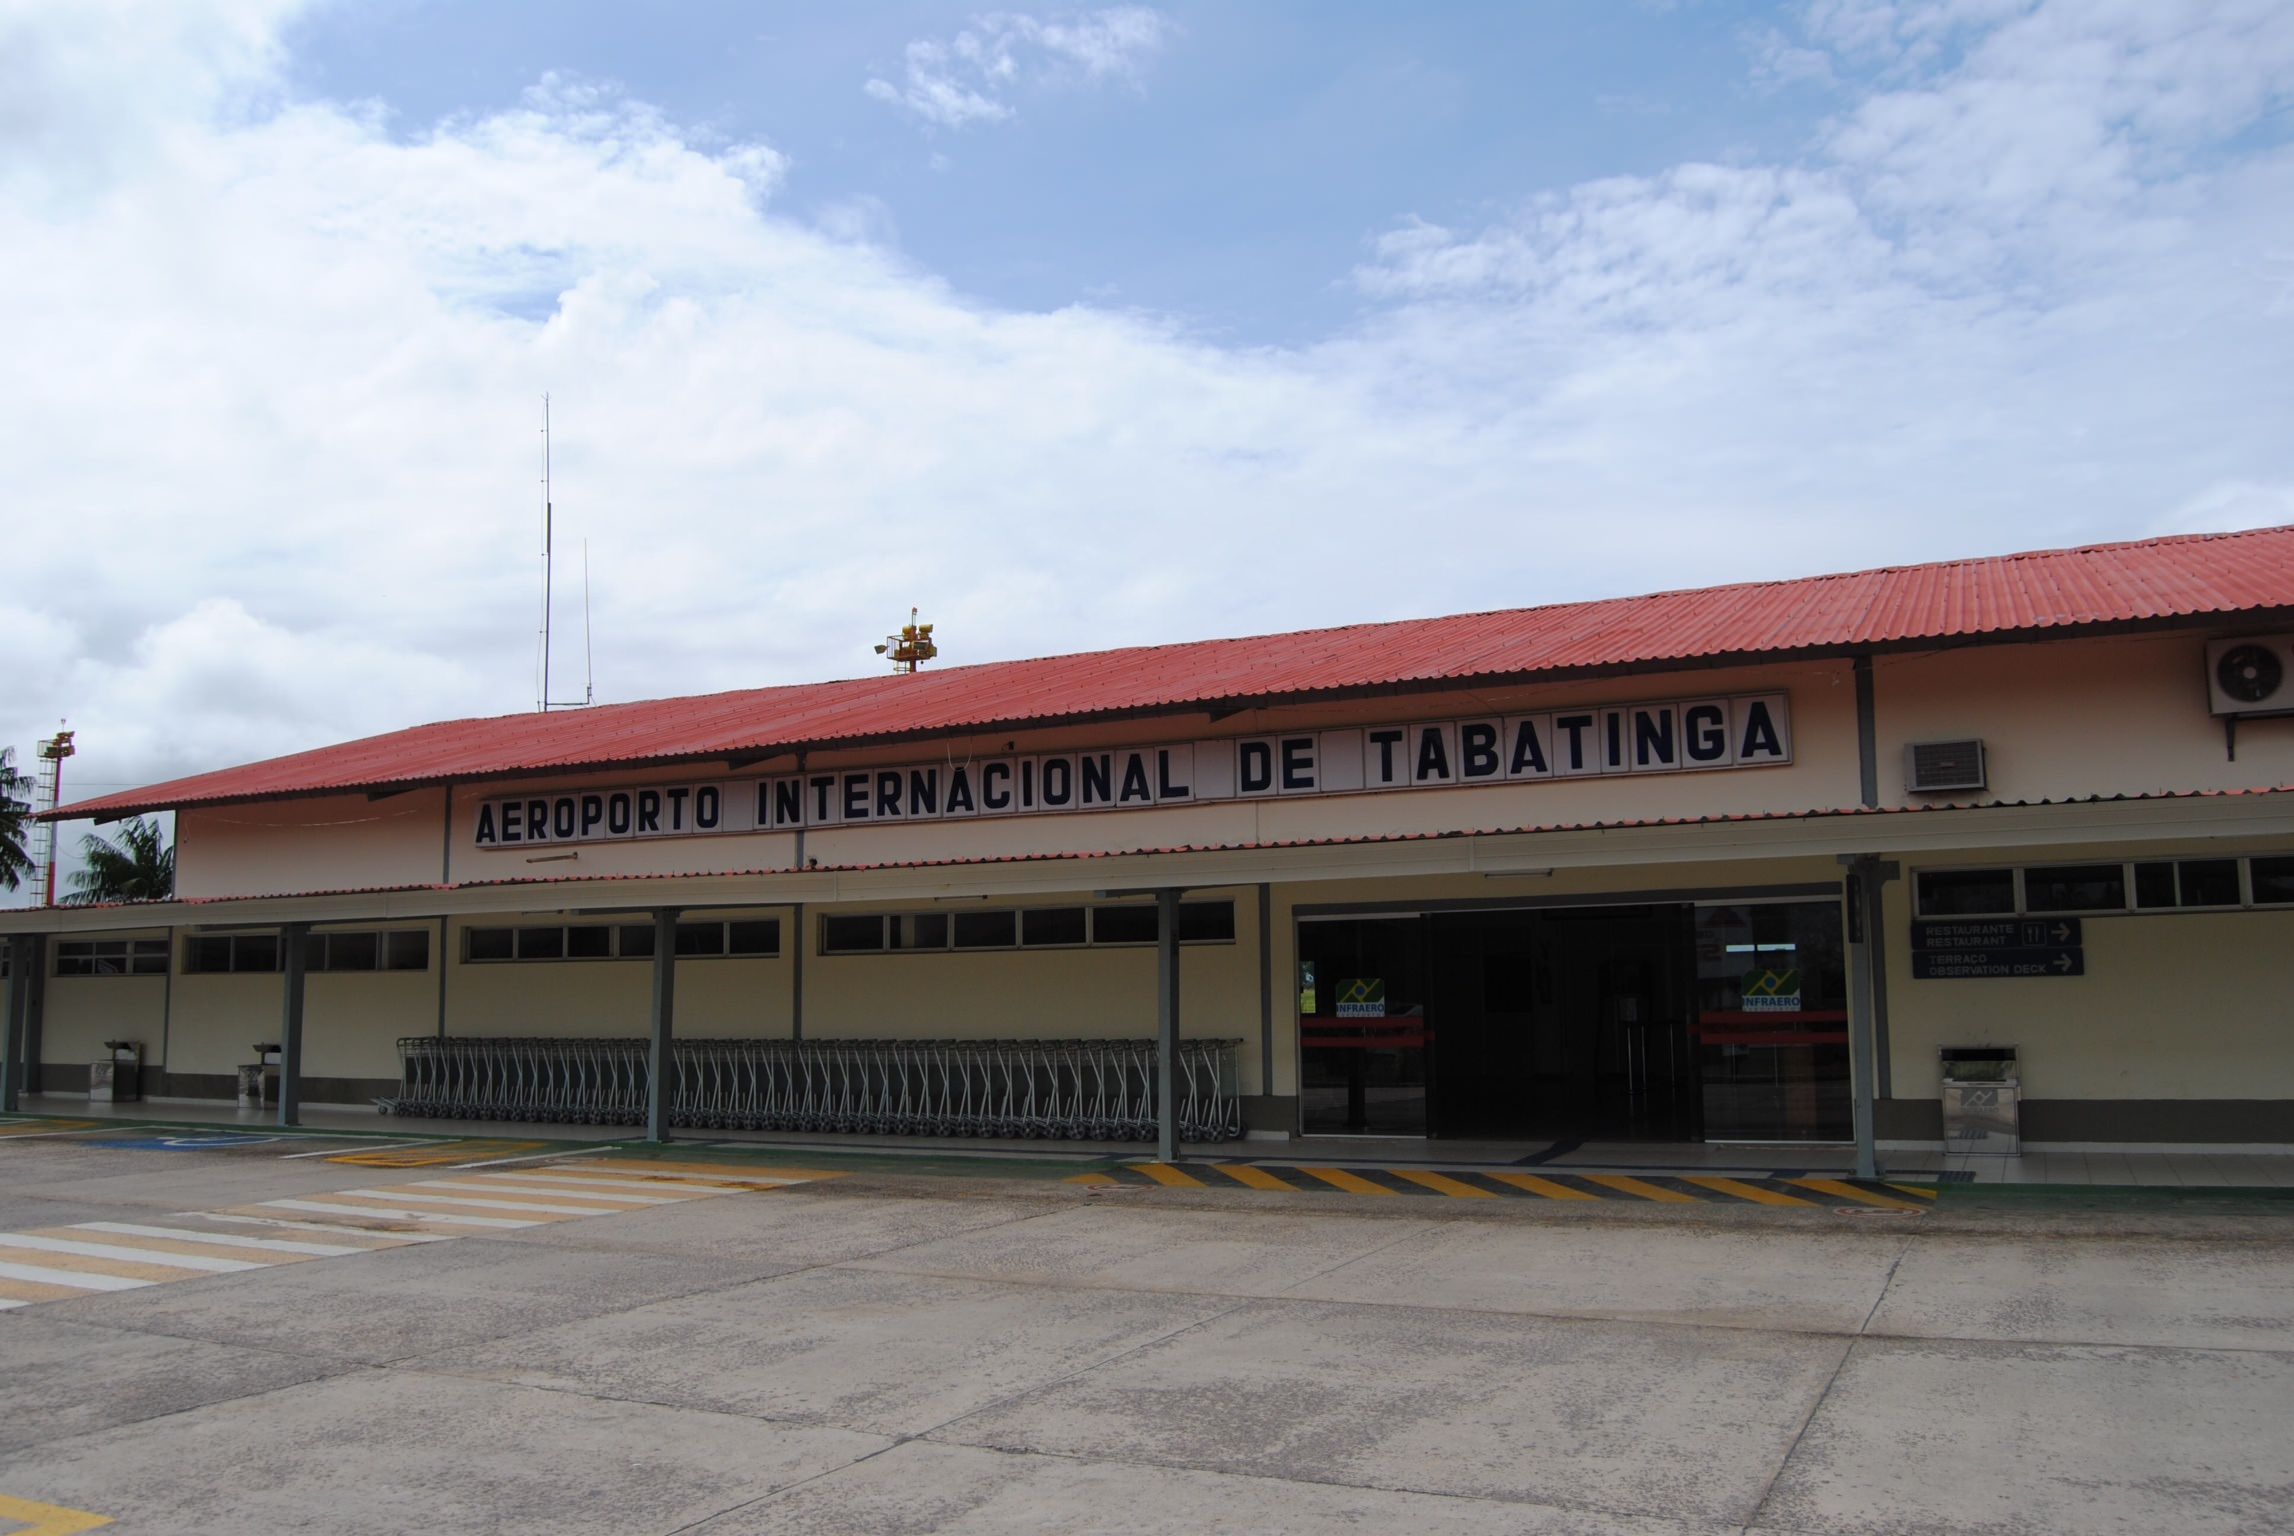 Tabatinga aeropuerto,Brazil